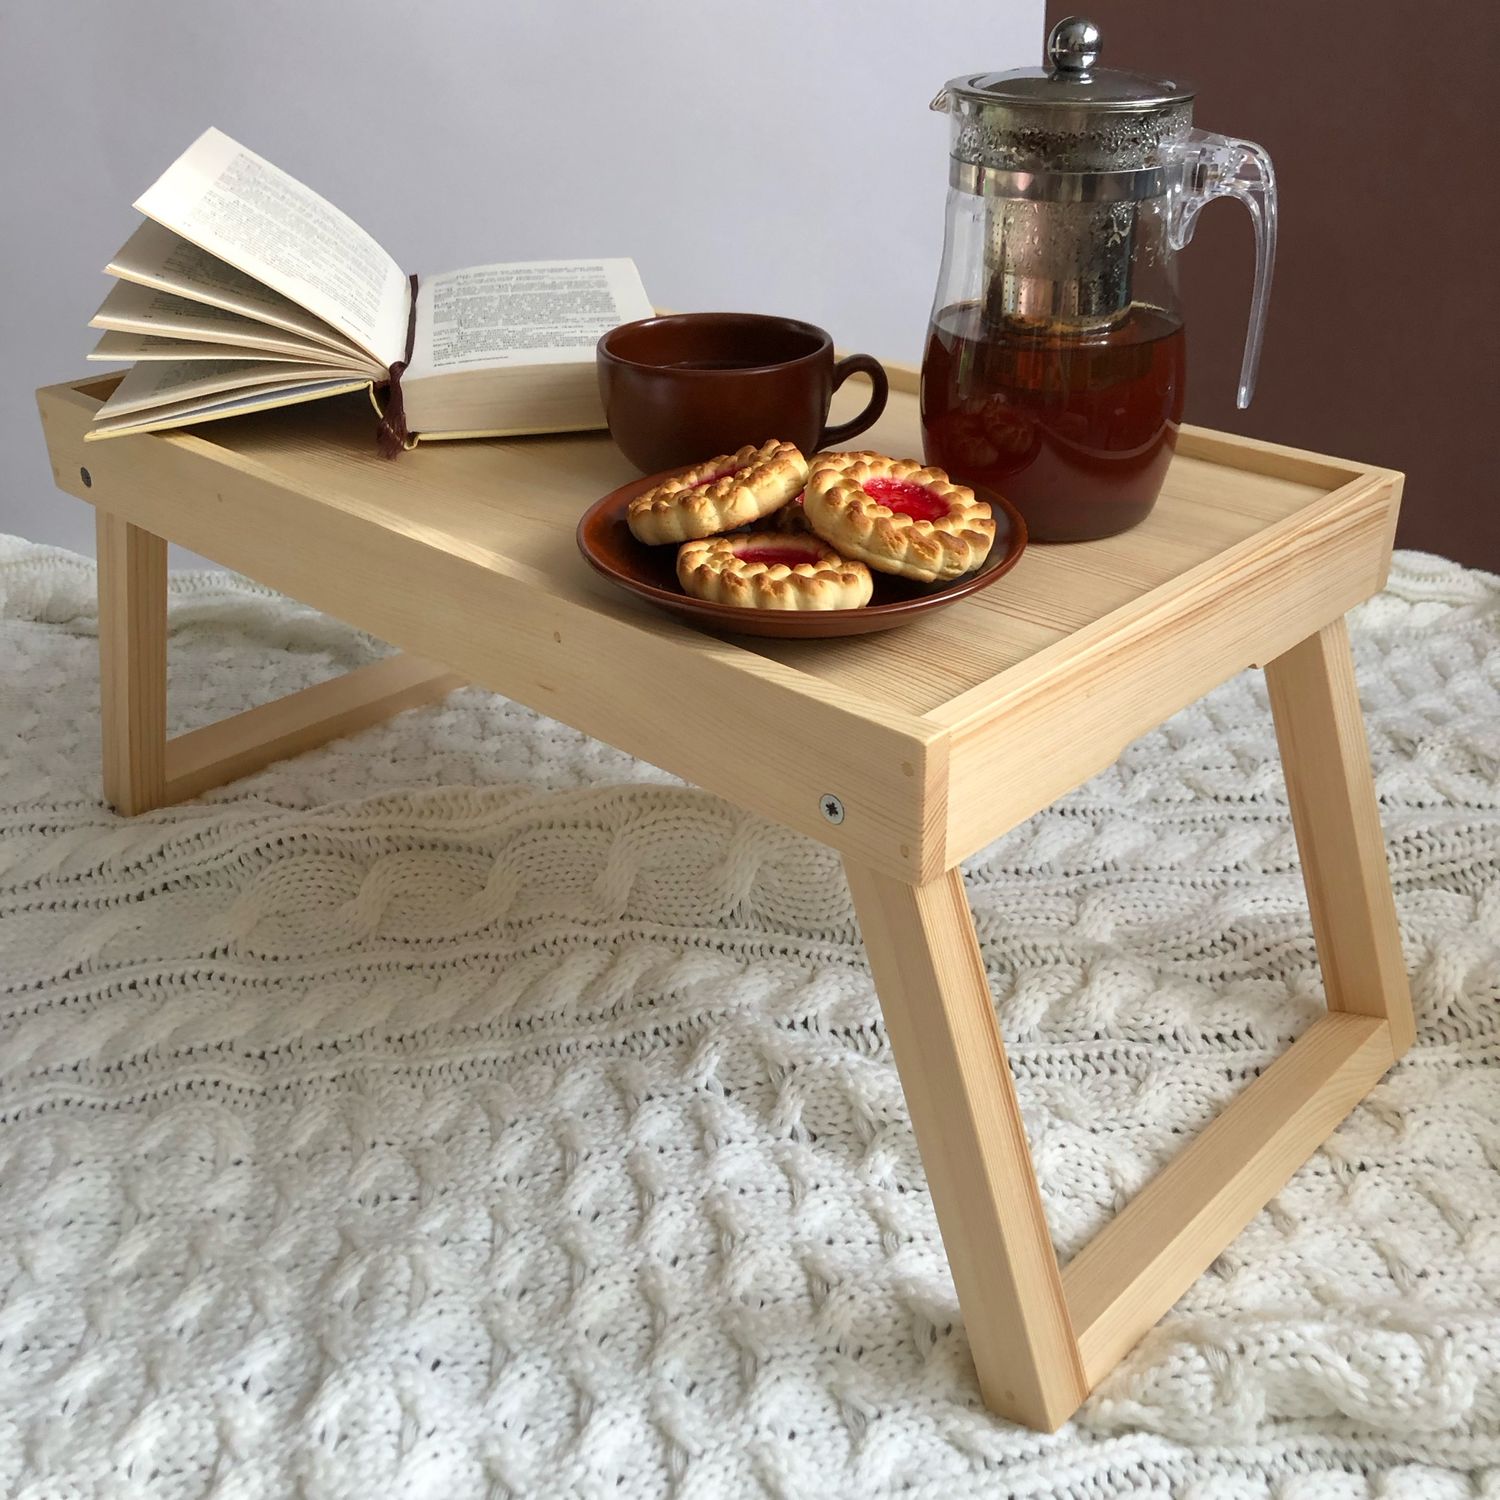 Кроватный столик для завтрака в постель: удобно и практично